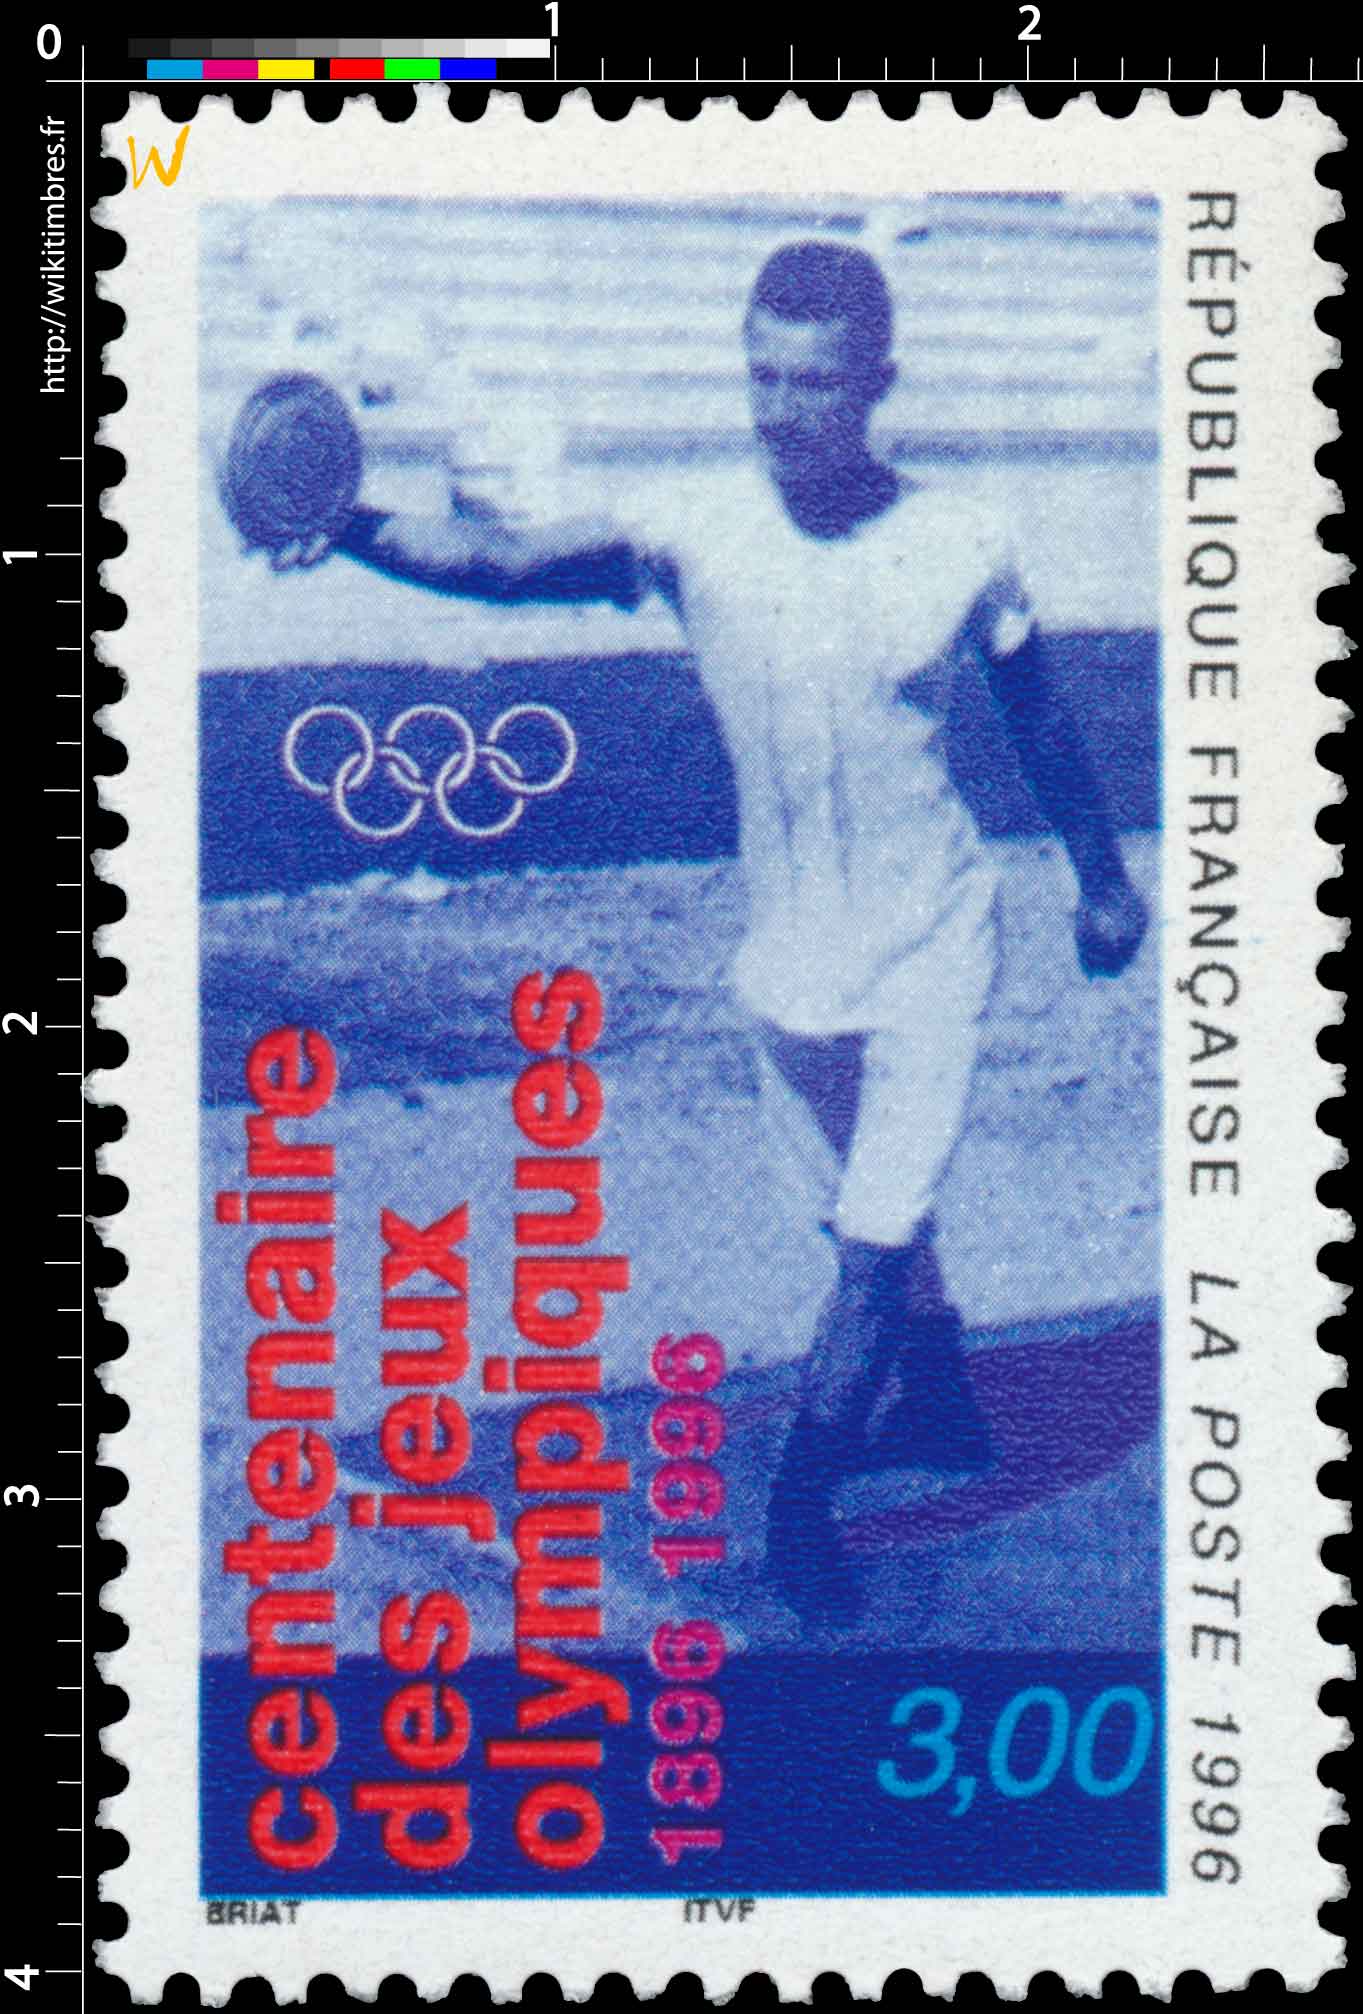 1996 centenaire des Jeux olympiques 1896-1996